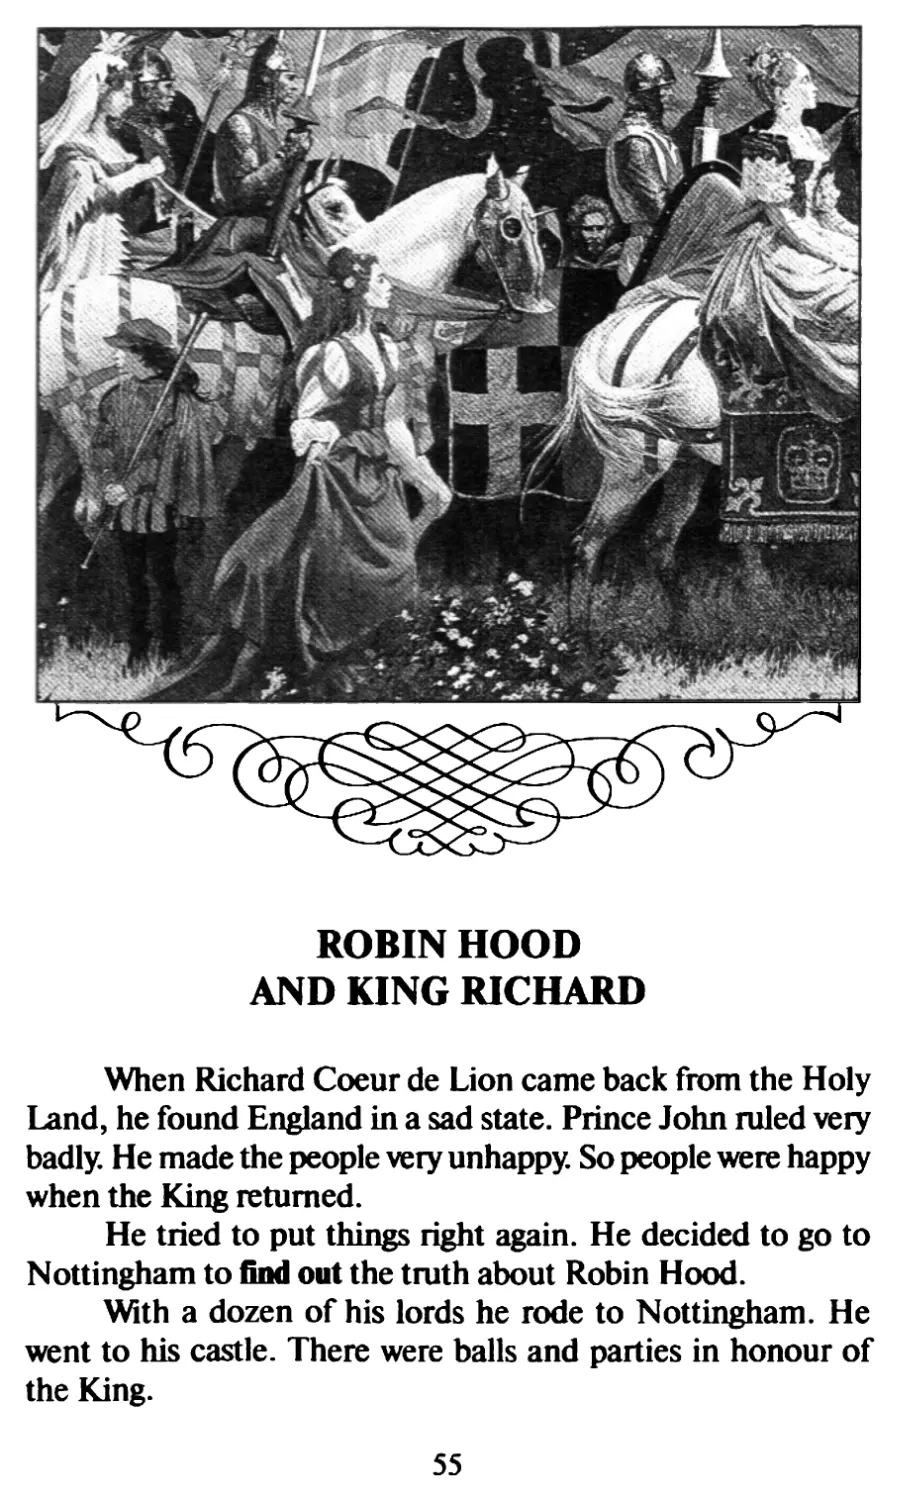 Robin Hood and King Richard